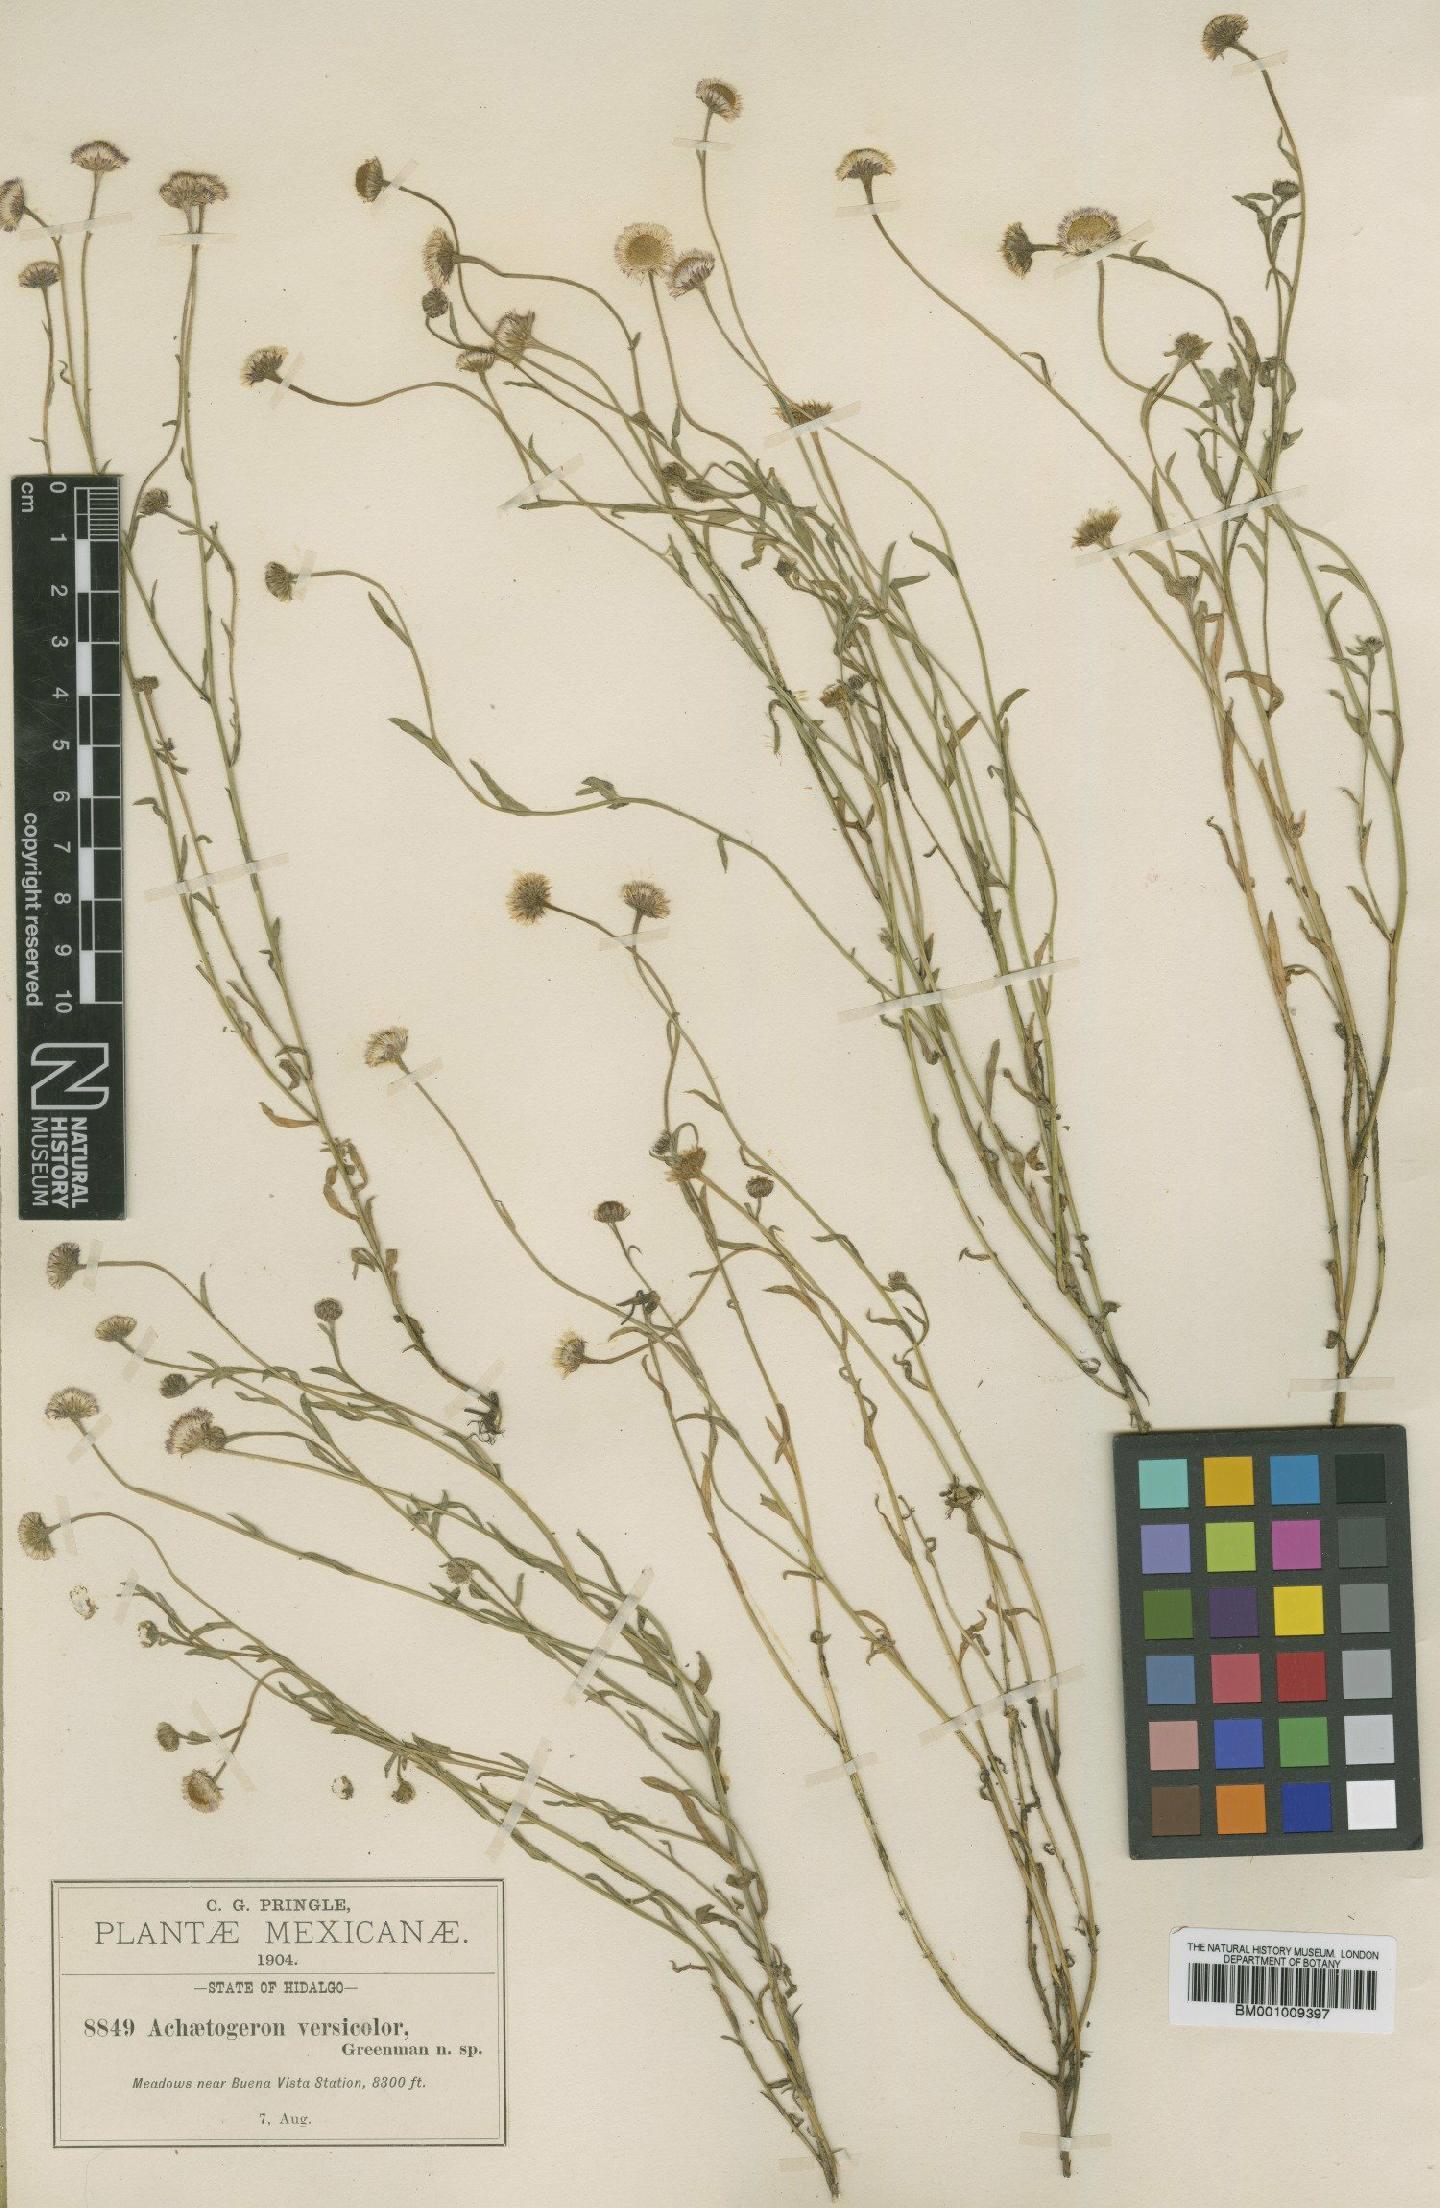 To NHMUK collection (Achaetogeron versicolor Greenm.; Type; NHMUK:ecatalogue:609244)